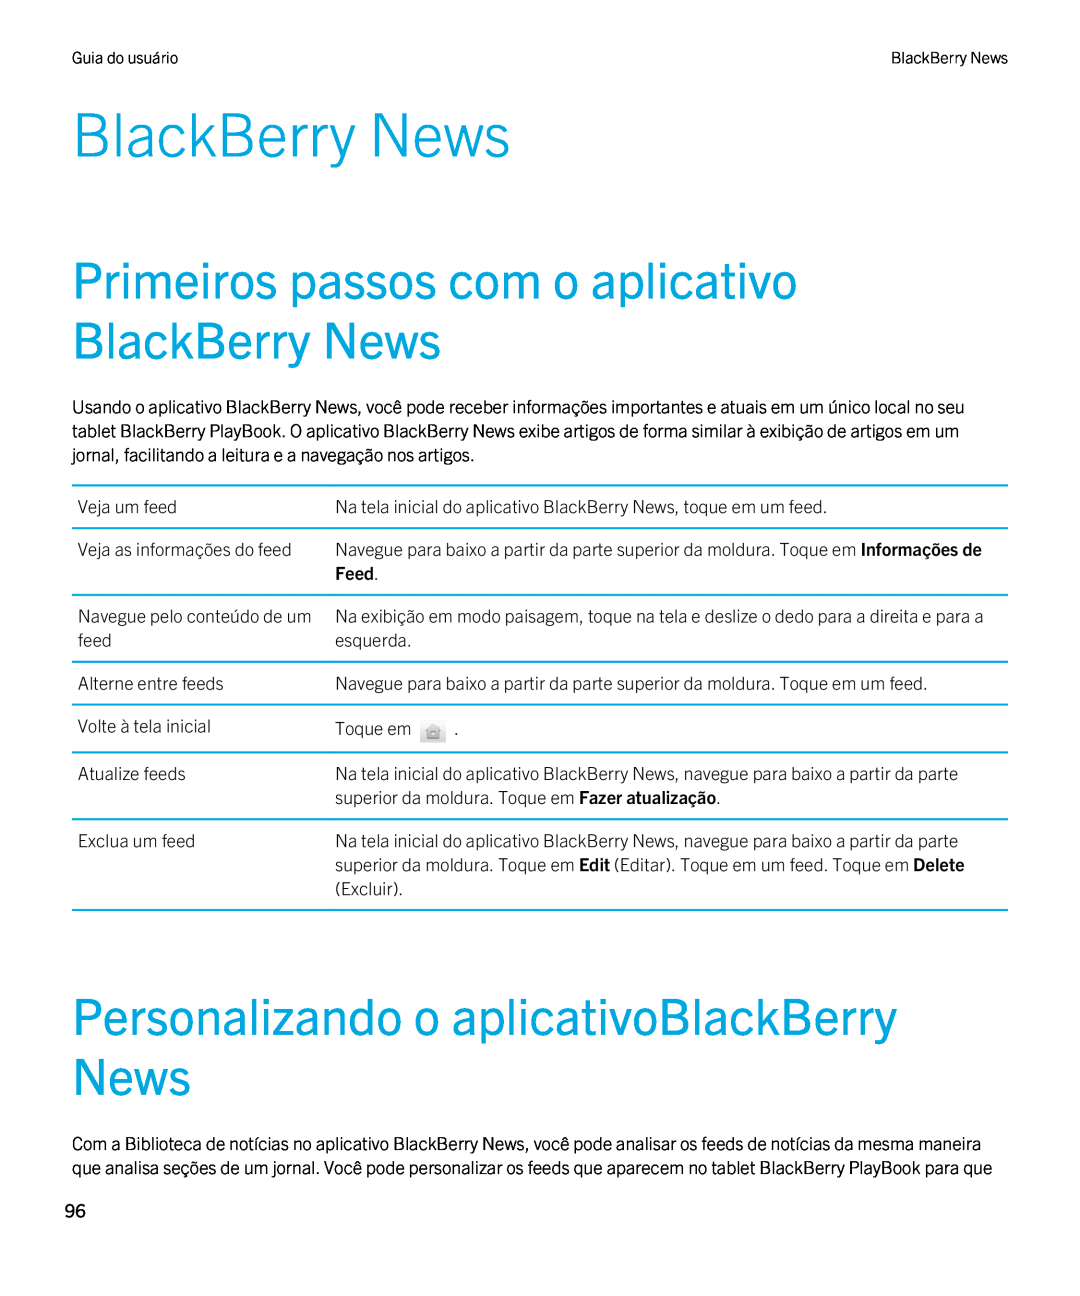 Blackberry 2.0.1 Primeiros passos com o aplicativo BlackBerry News, Personalizando o aplicativoBlackBerry News, Feed 